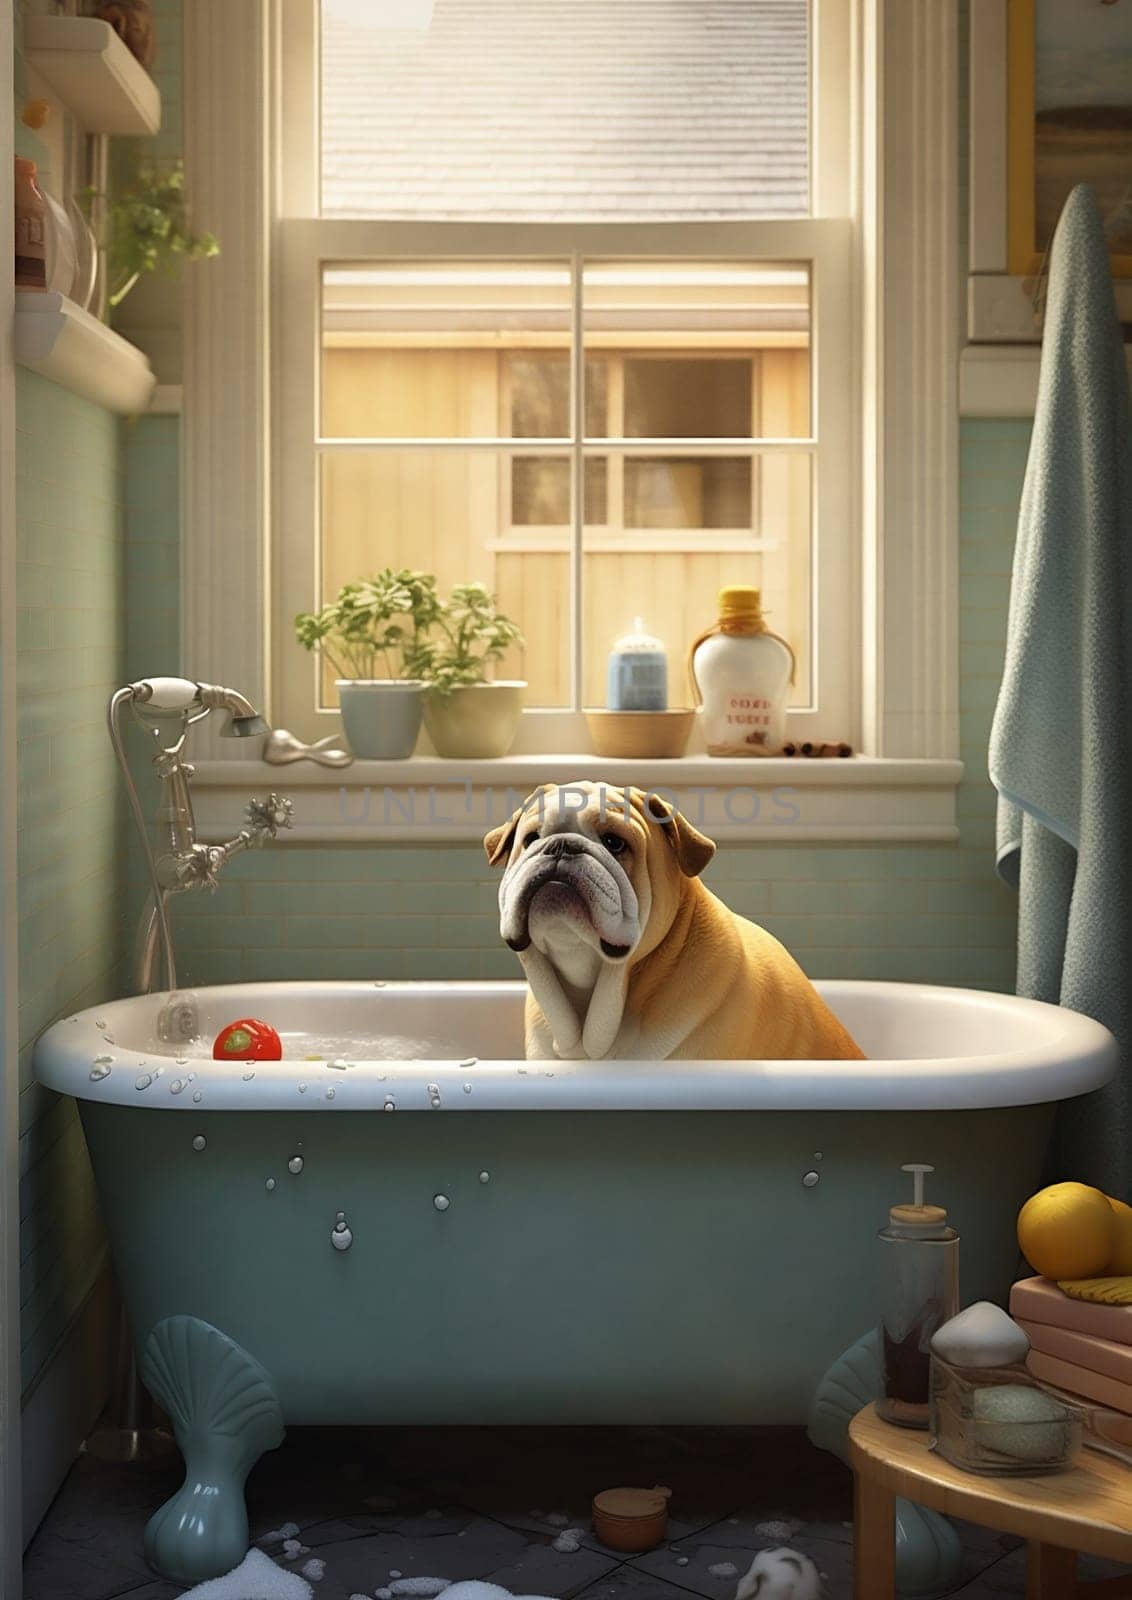 Dog canine bathroom bath animal pet bathtub by Vichizh